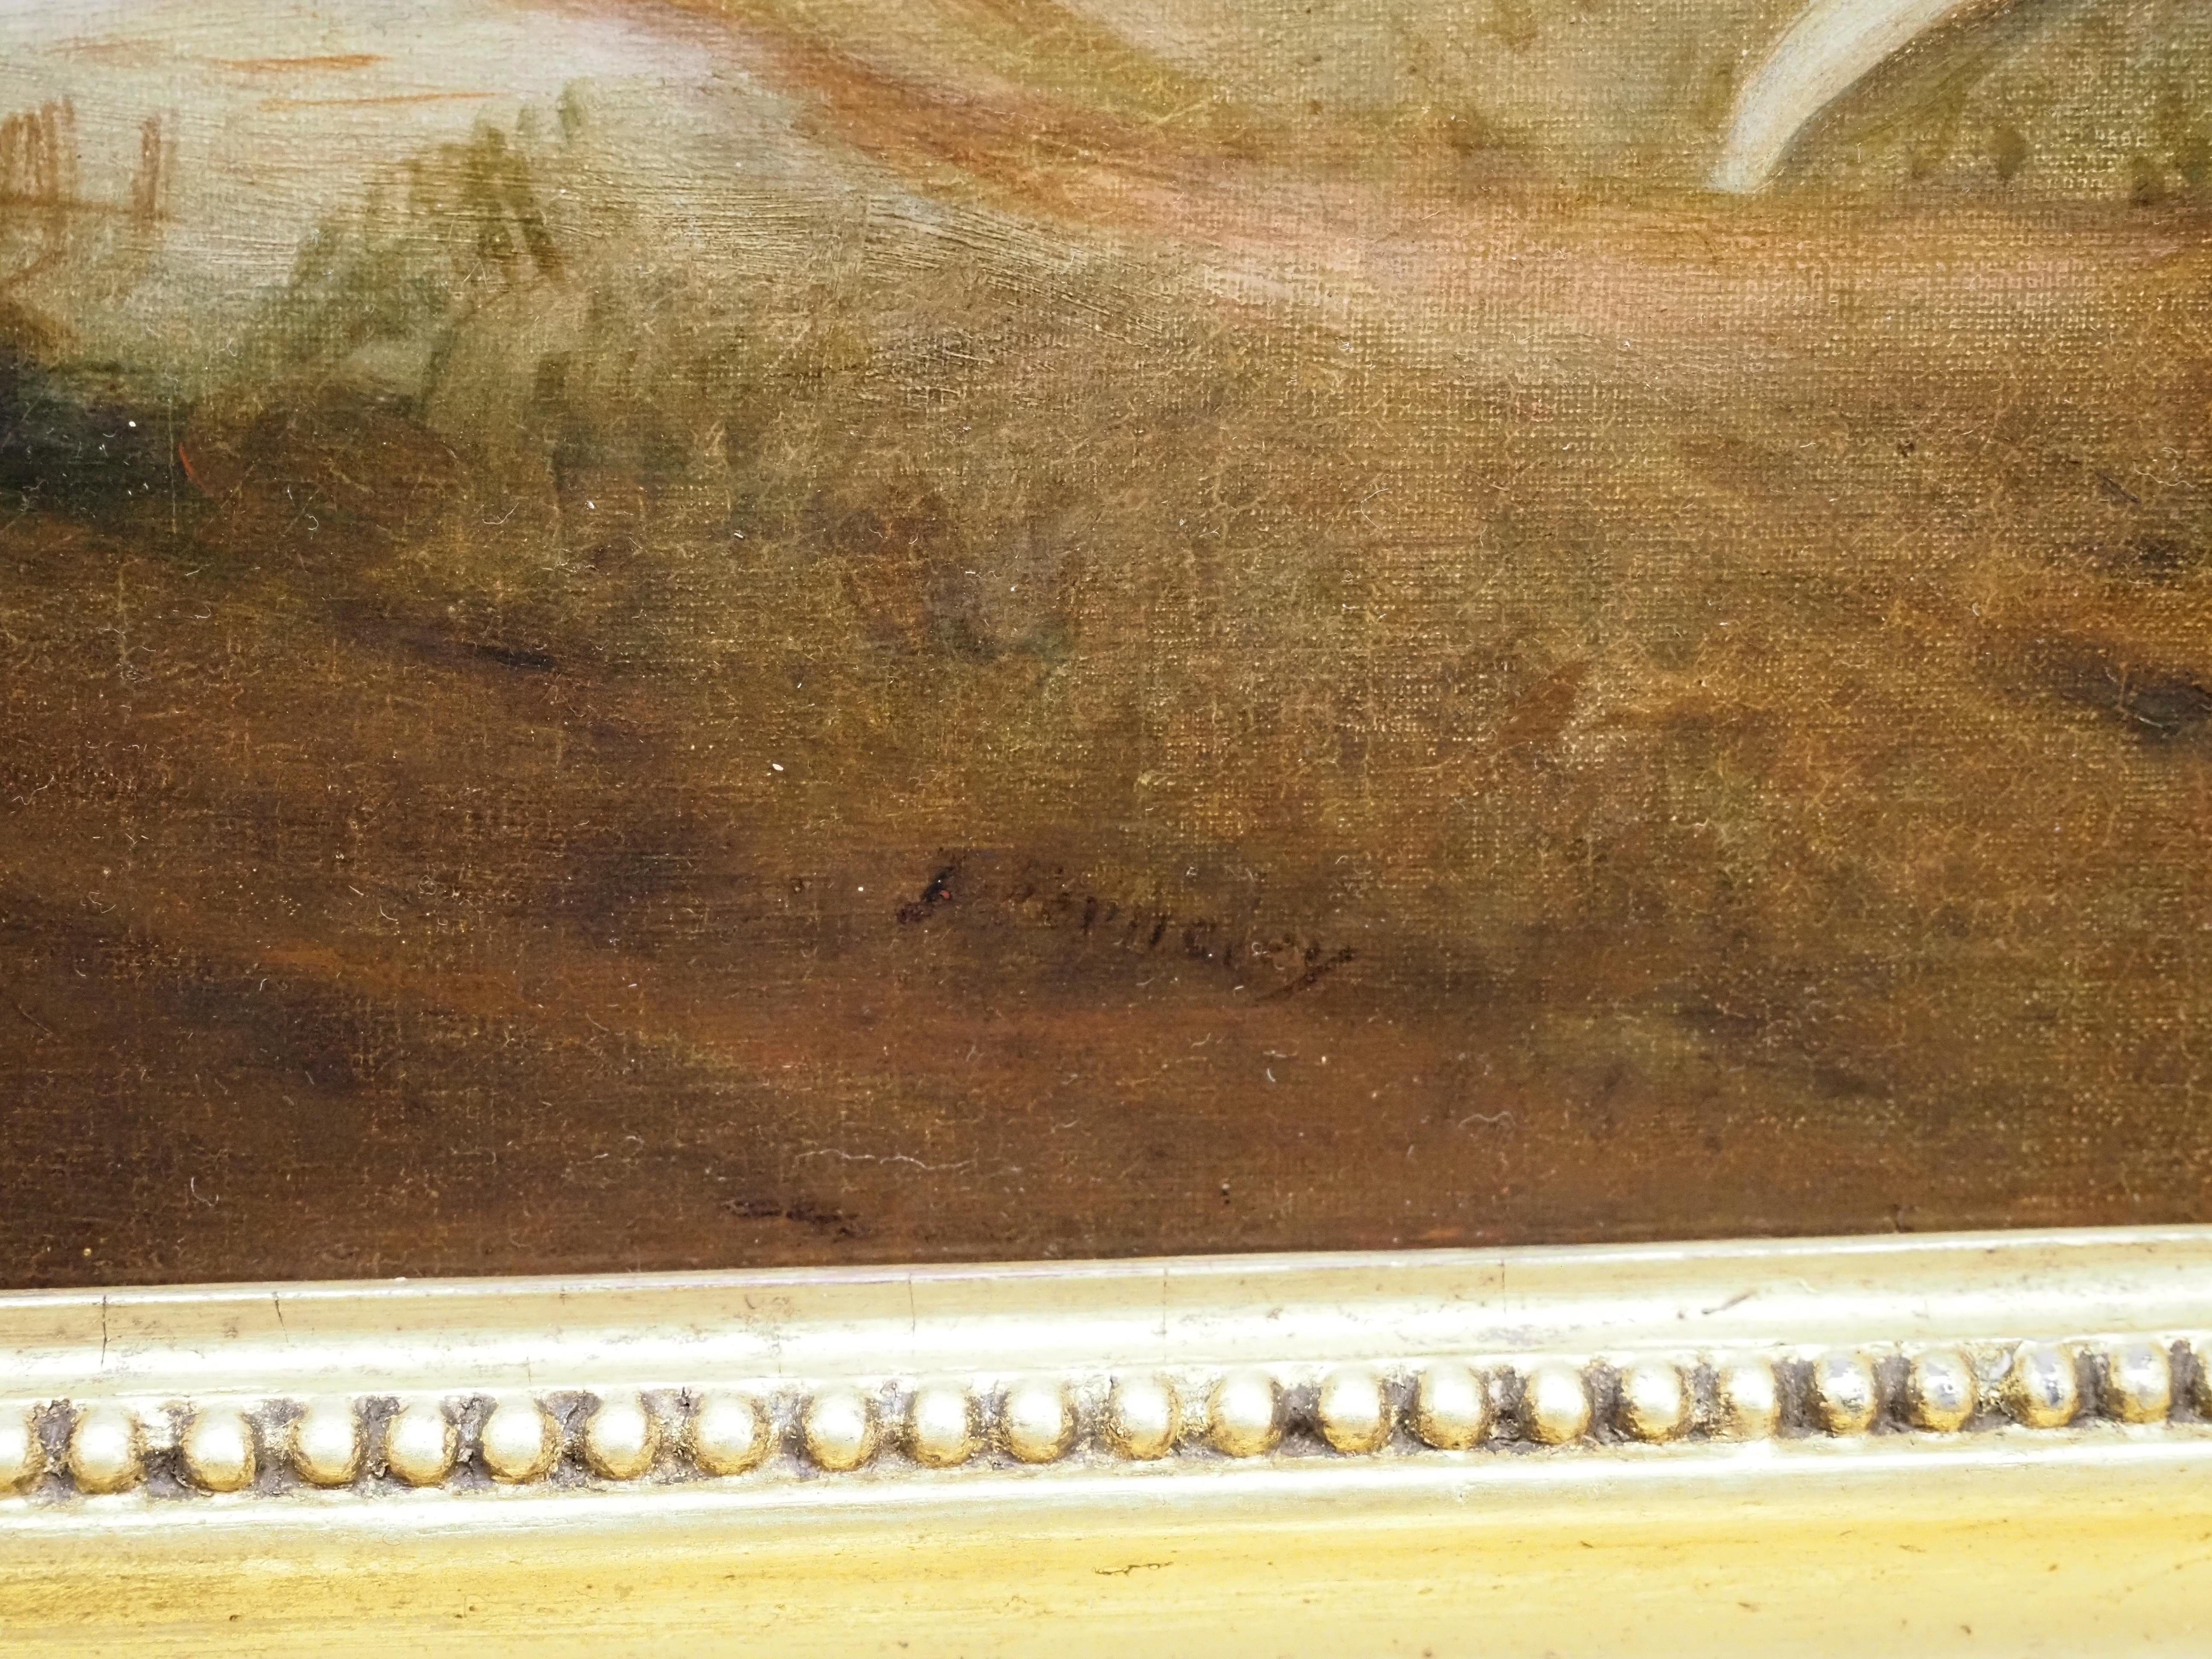 John Ferneley Snr (1782-1860 Melton Mowbray)
Les renards de Sir Richard Sutton
signé J. Ferneley en bas à droite
Huile sur toile
Taille de la toile 16 1/8 x 20 1/2 in
Encadré Taille 21 x 25 in

Provenance
The E. W. Towler Collection, anciennement de